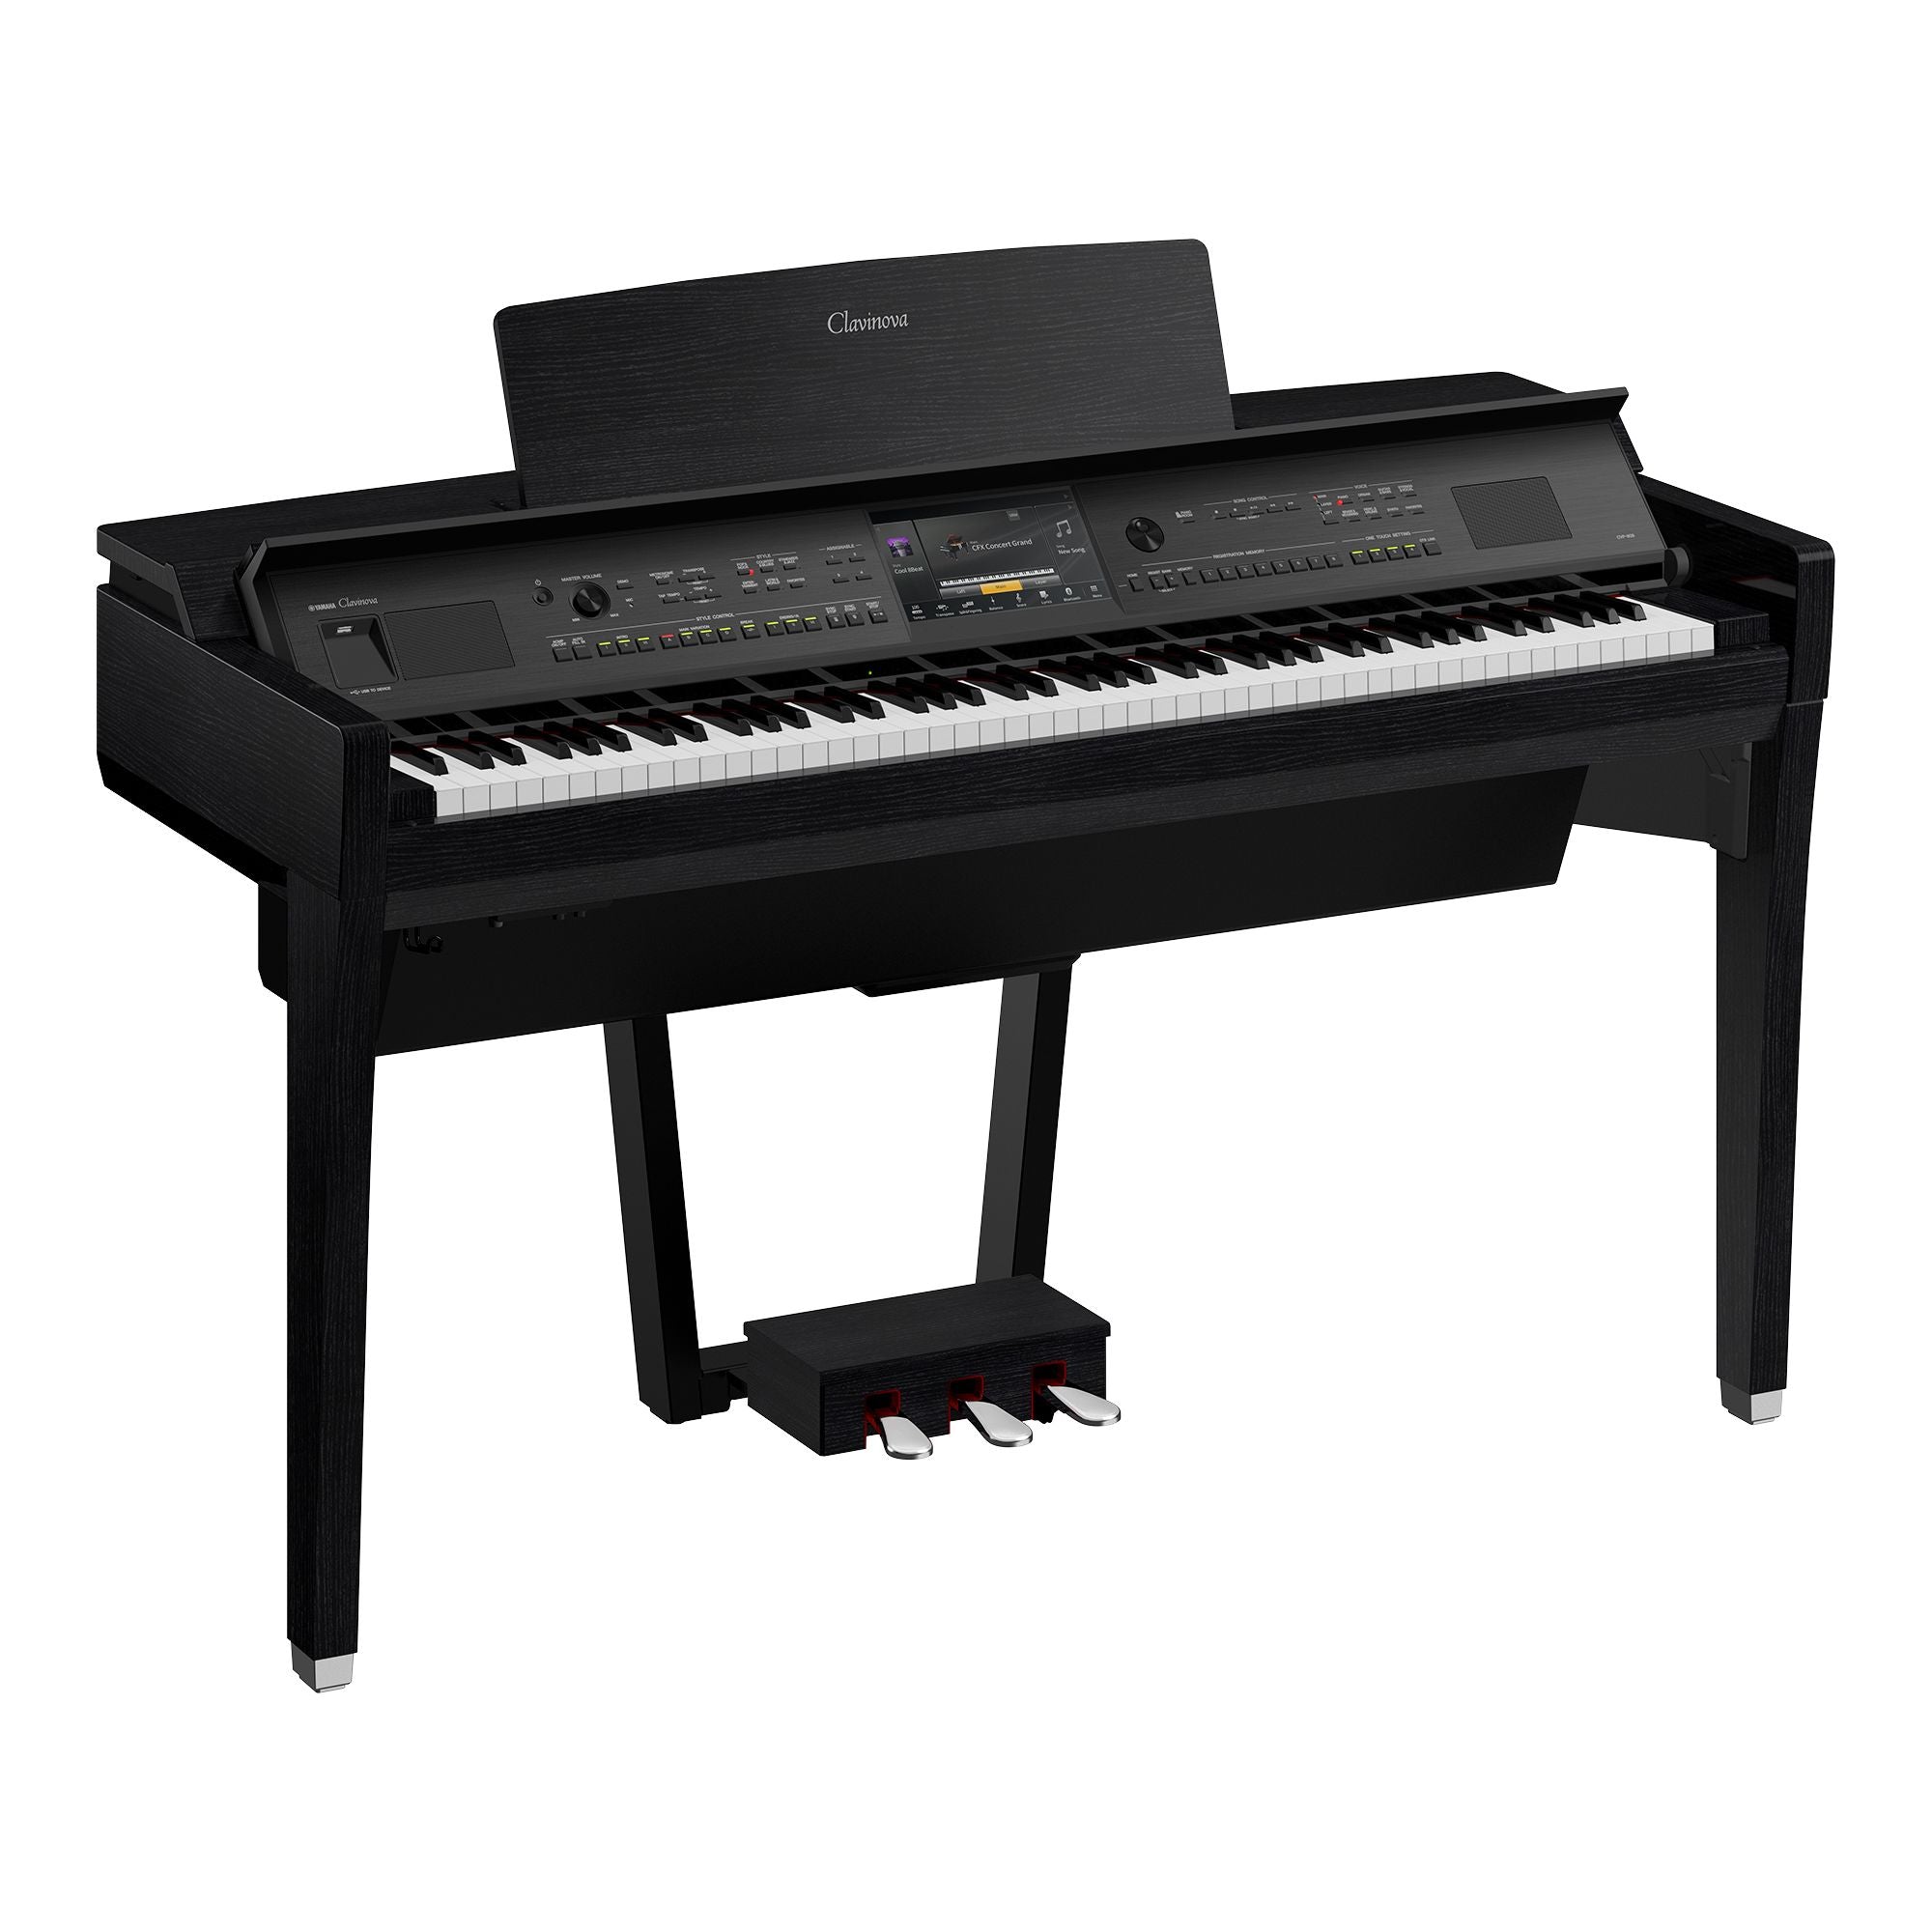 Đàn Piano Điện Yamaha CVP-809 - Clavinova